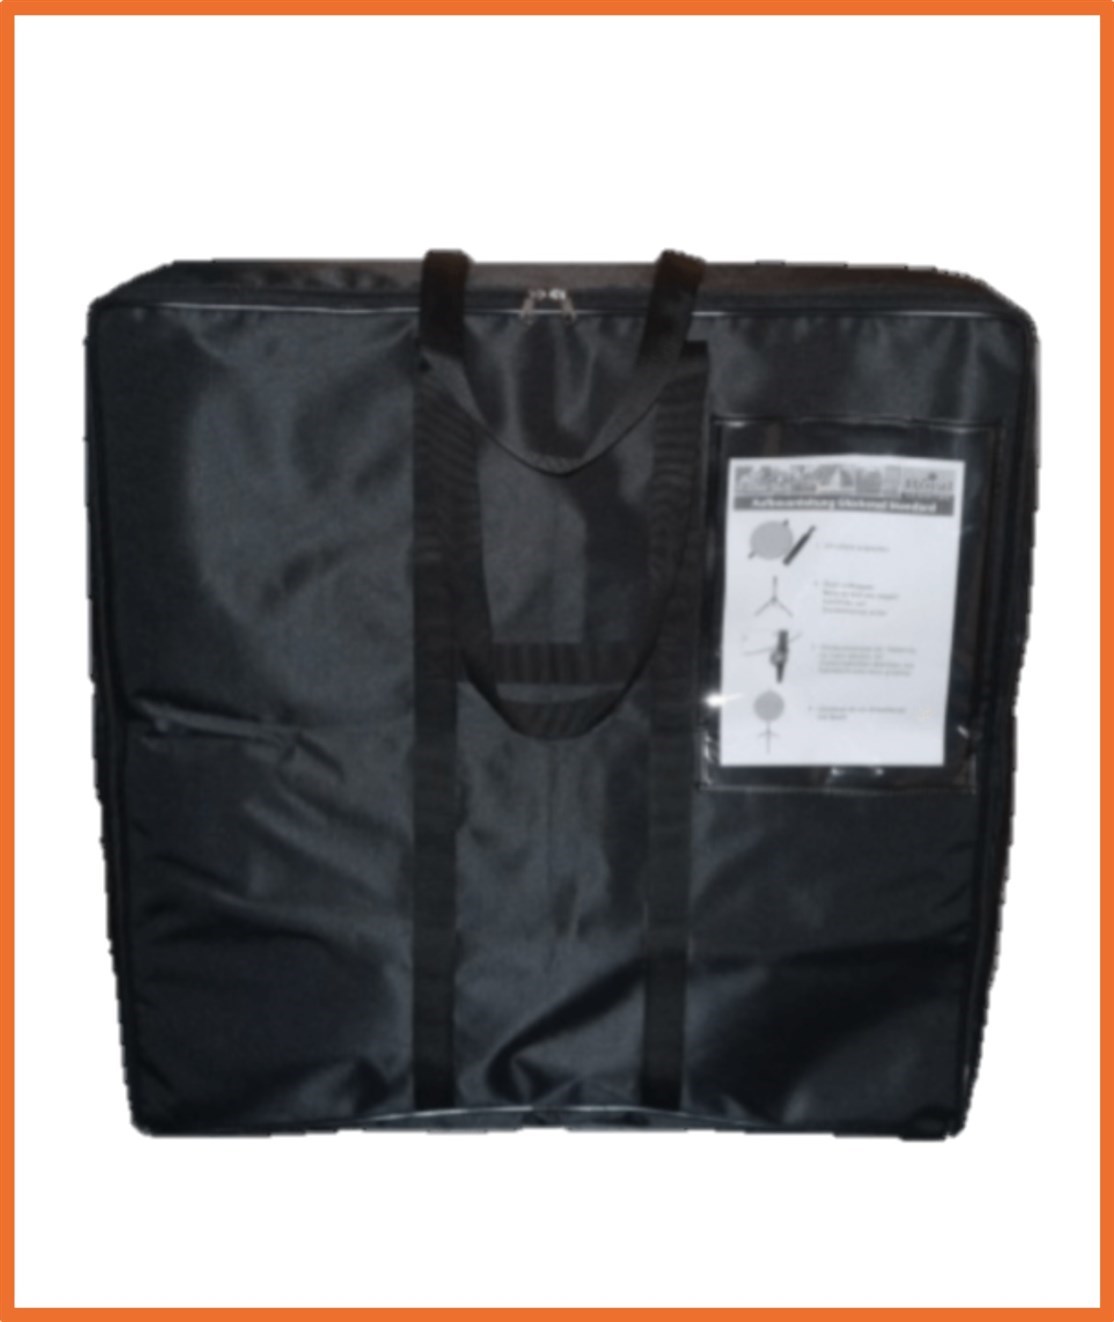 Transport Taske til dit lykkehjul
Kvalitets taske i kraftig polyester med lynlås